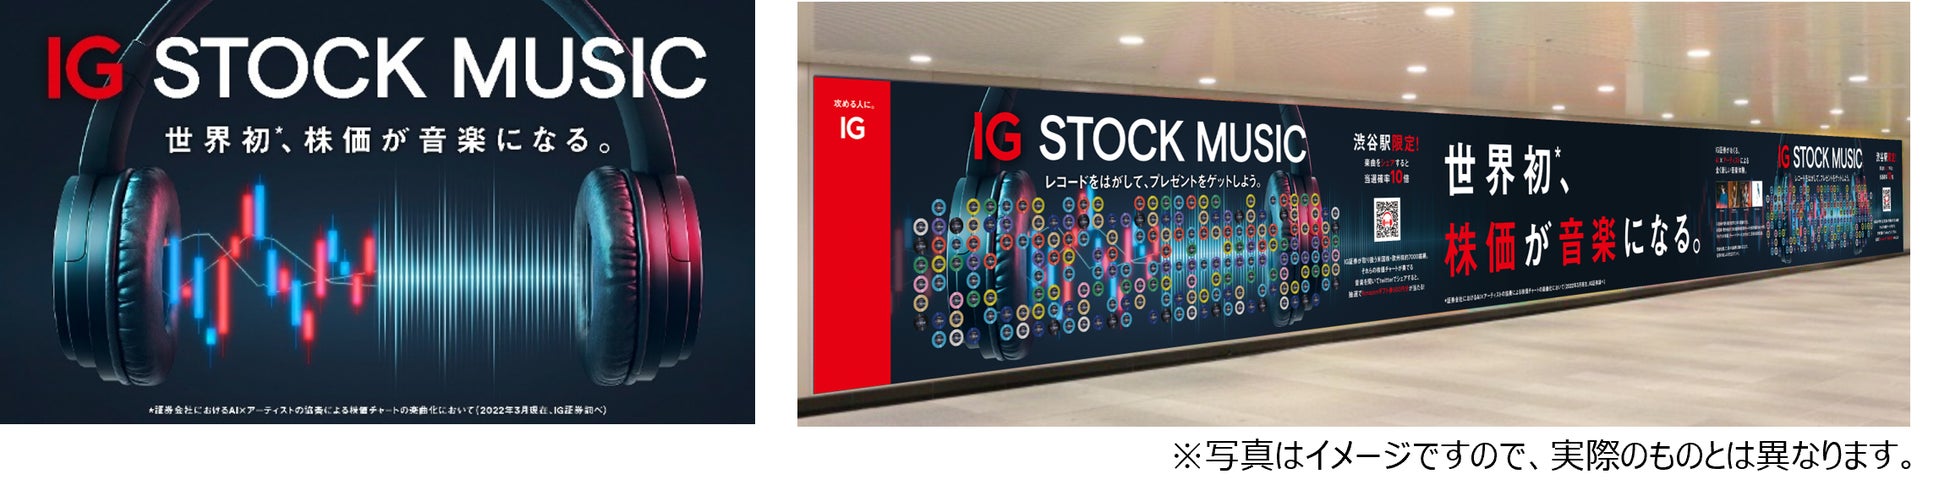 世界初*️、株価が音楽になる。『IG STOCK MUSIC』 2022年4月11日(月) より始動 渋谷駅で、Amazonギフト券の当たる大型壁面広告も展開